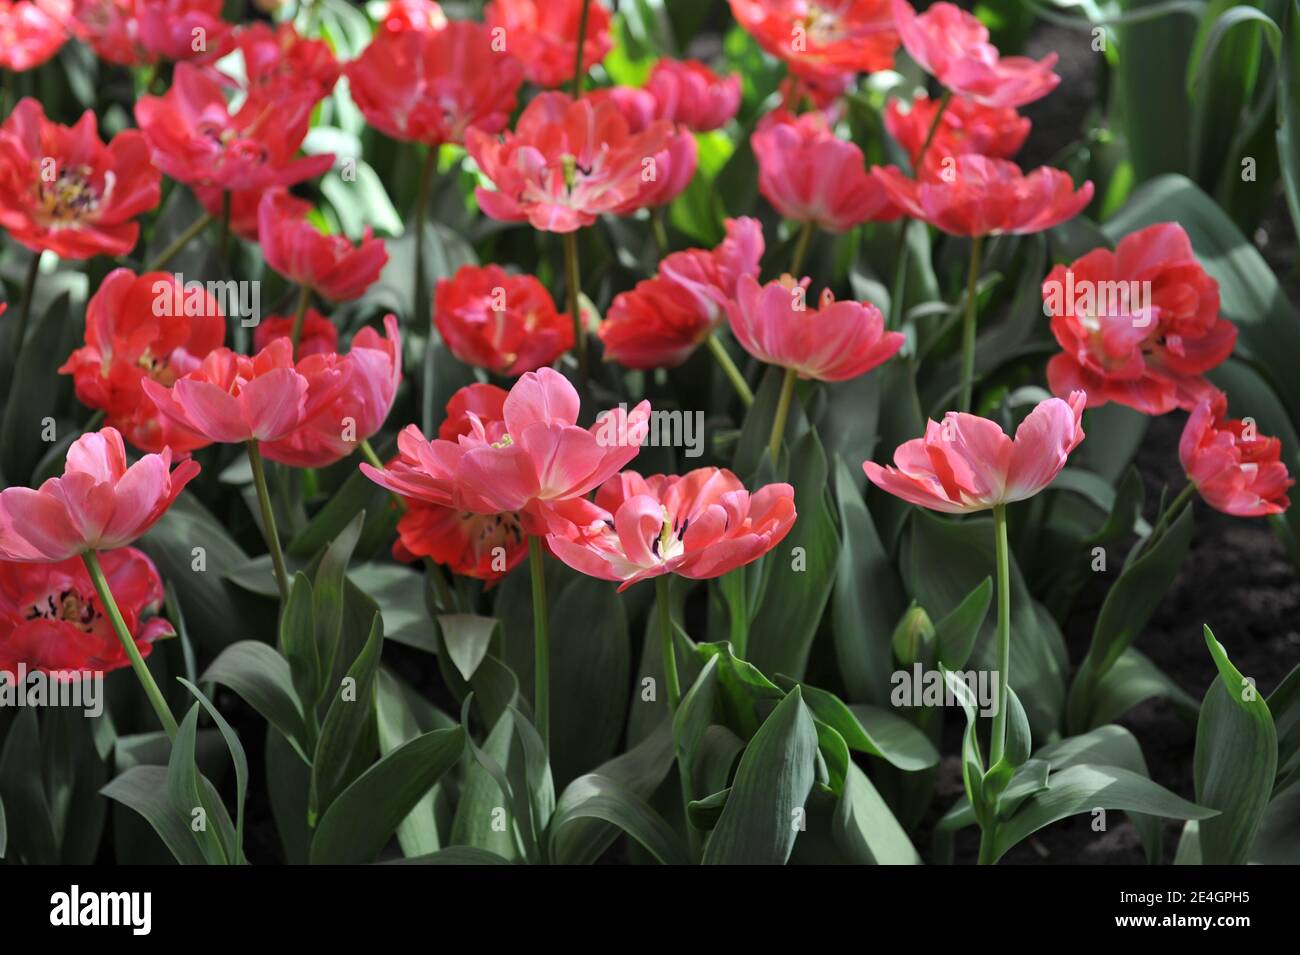 Tulipanes dobles tardíos (Tulipa) flor de peonías de color rojo grueso en la estrella final Un jardín en abril Foto de stock